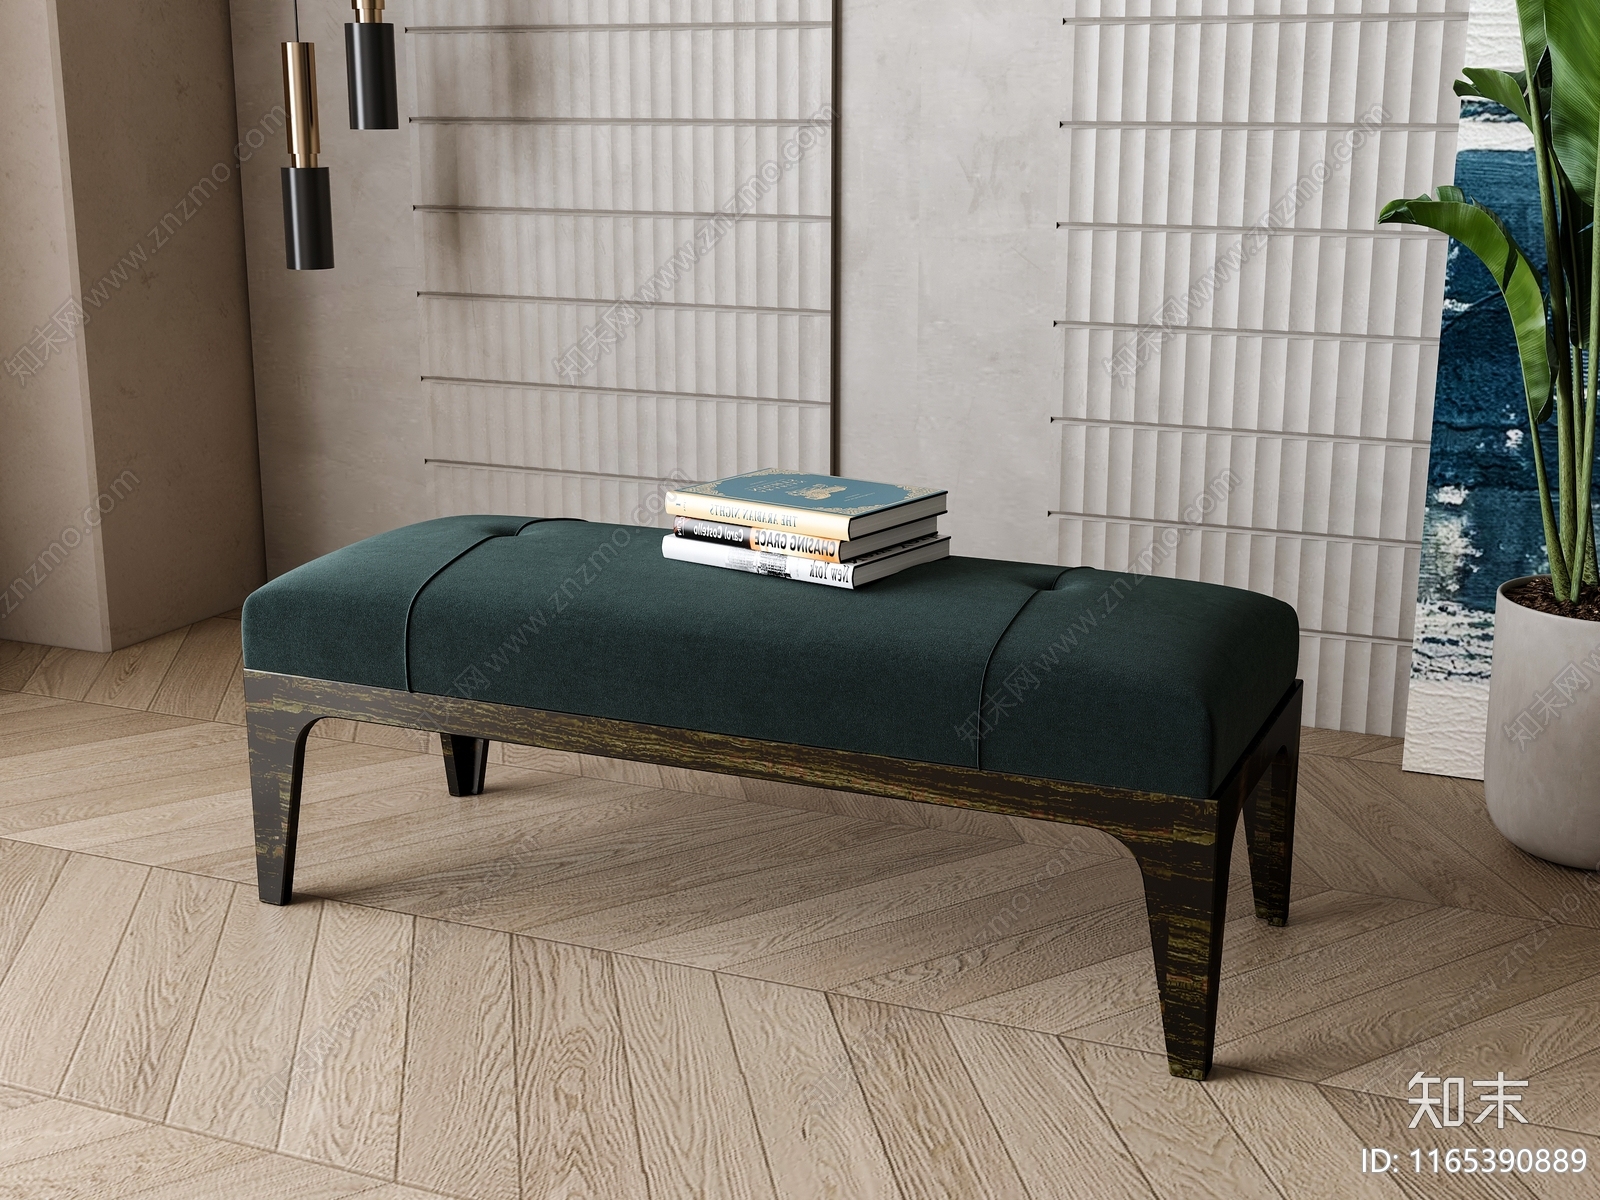 美式沙发凳3D模型下载【ID:1165390889】